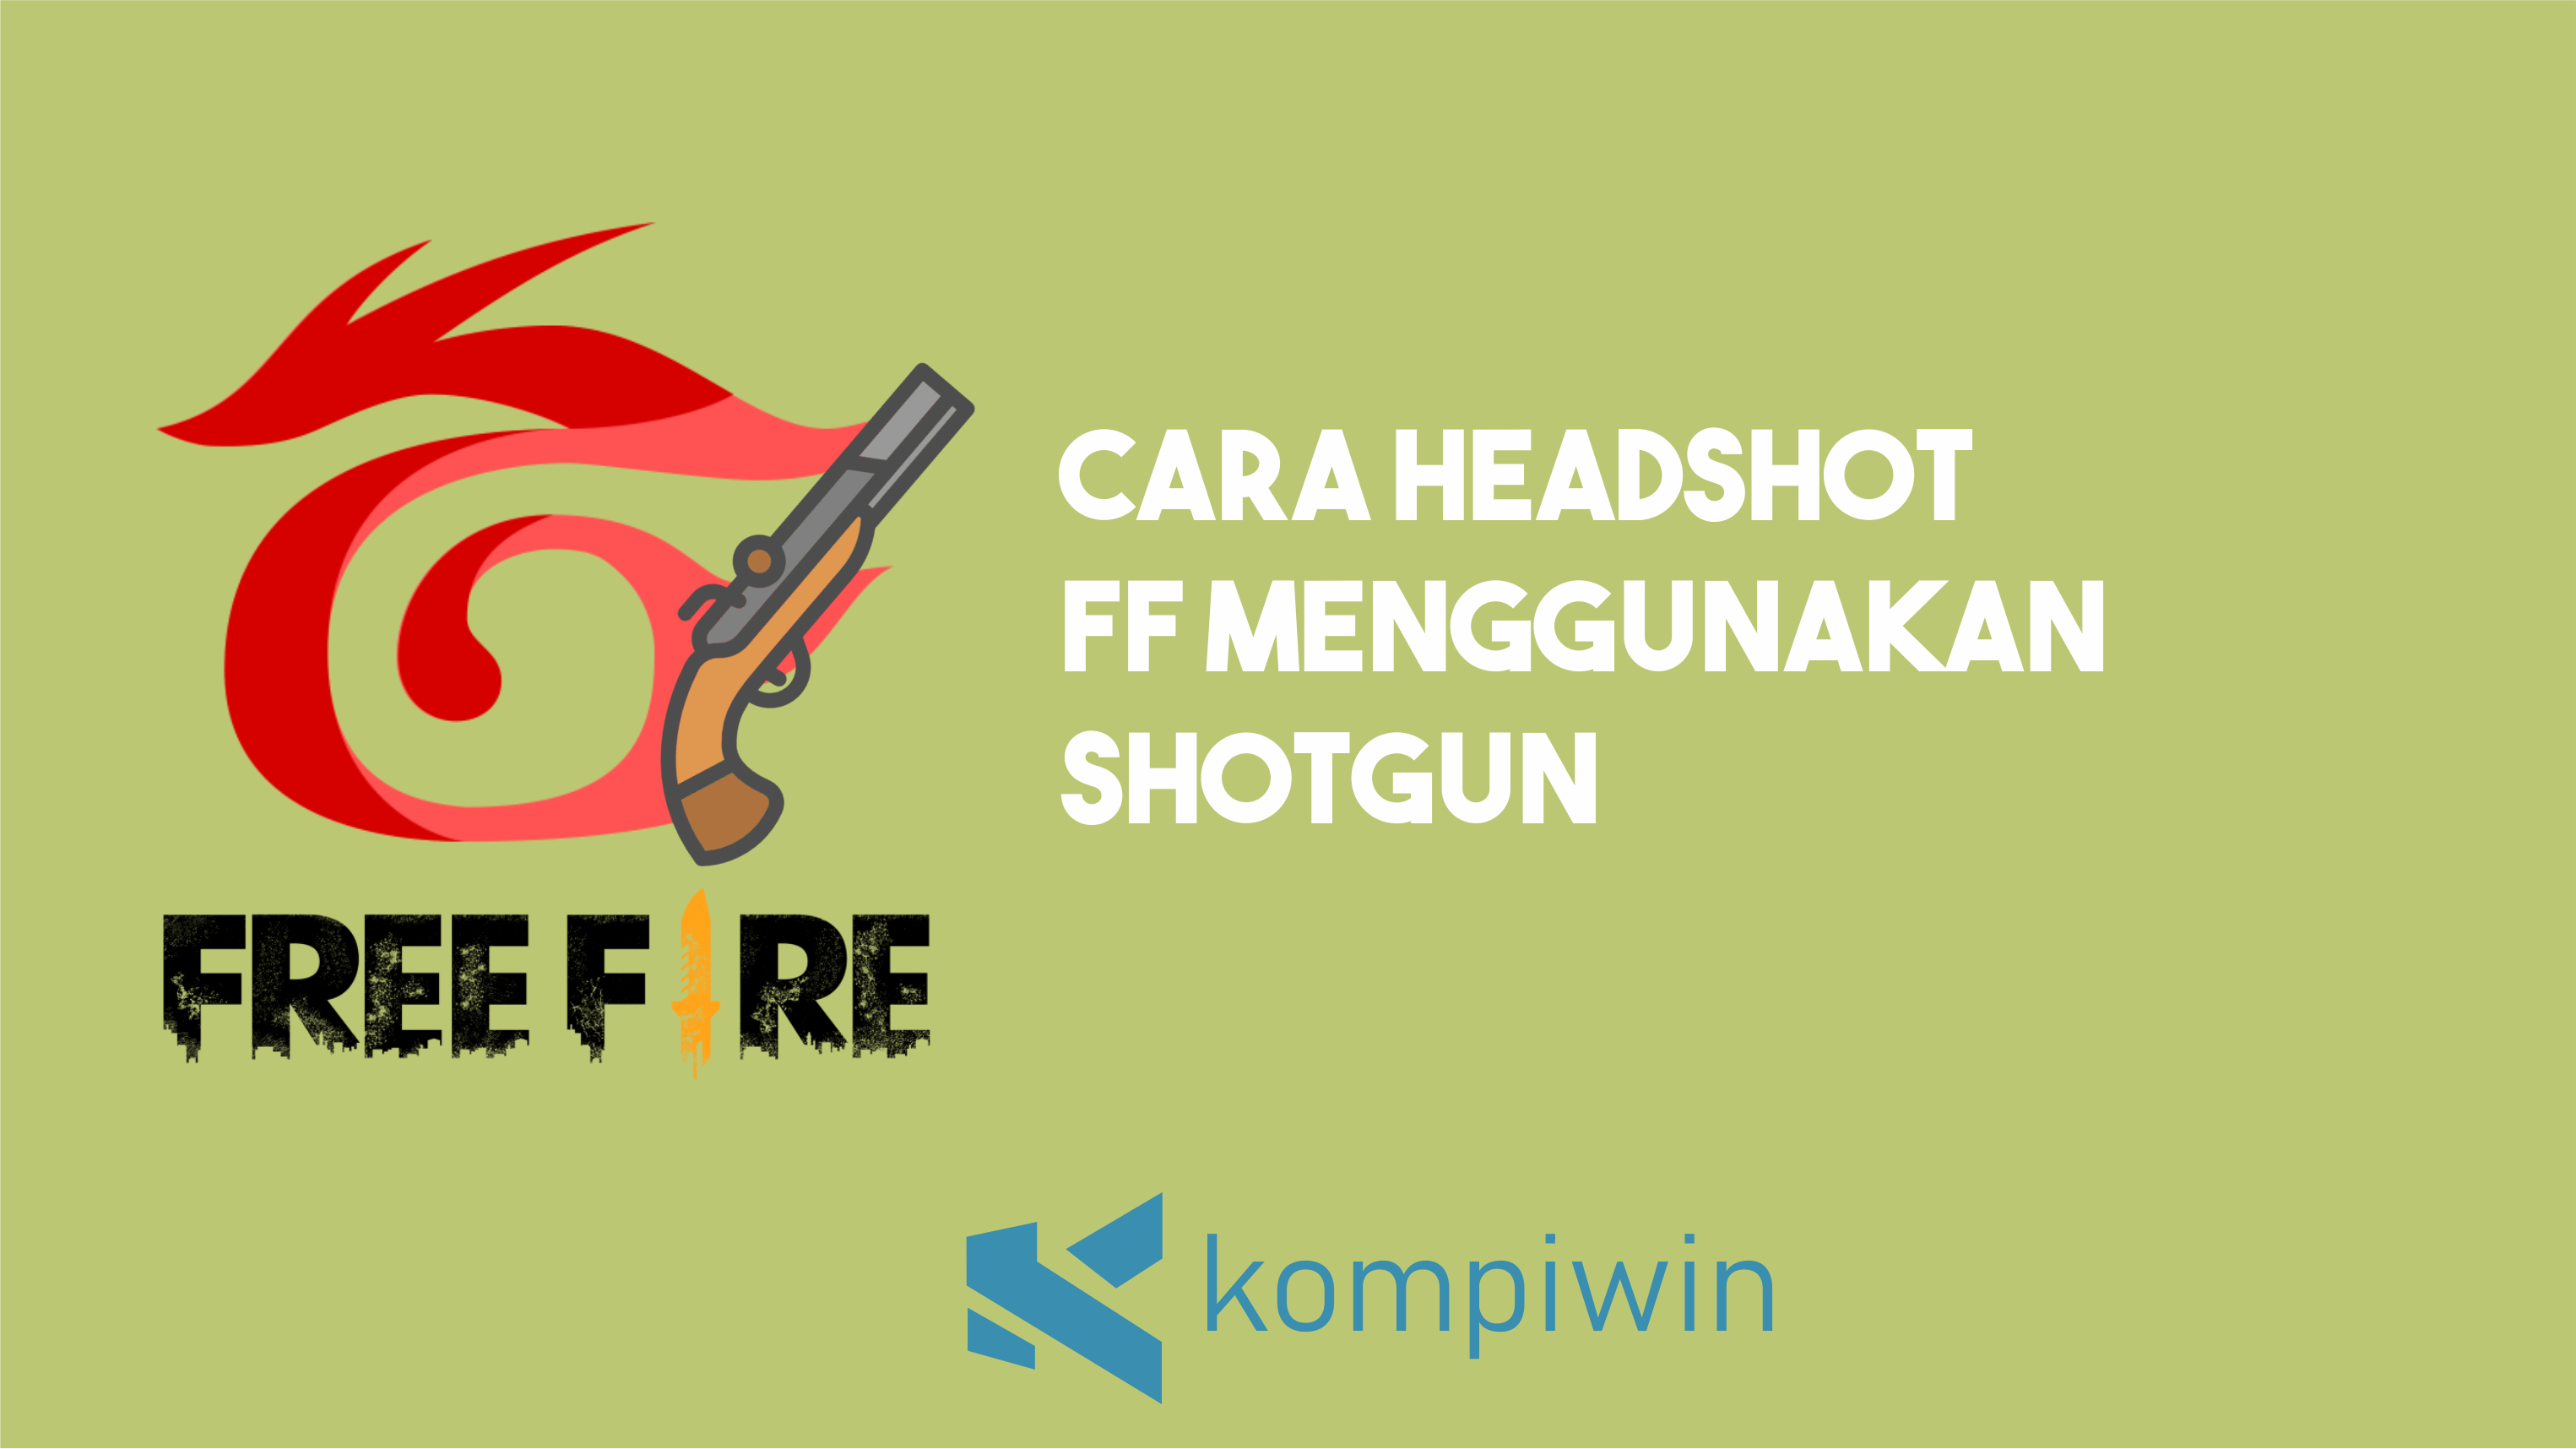 Cara Headshot FF Menggunakan Shotgun